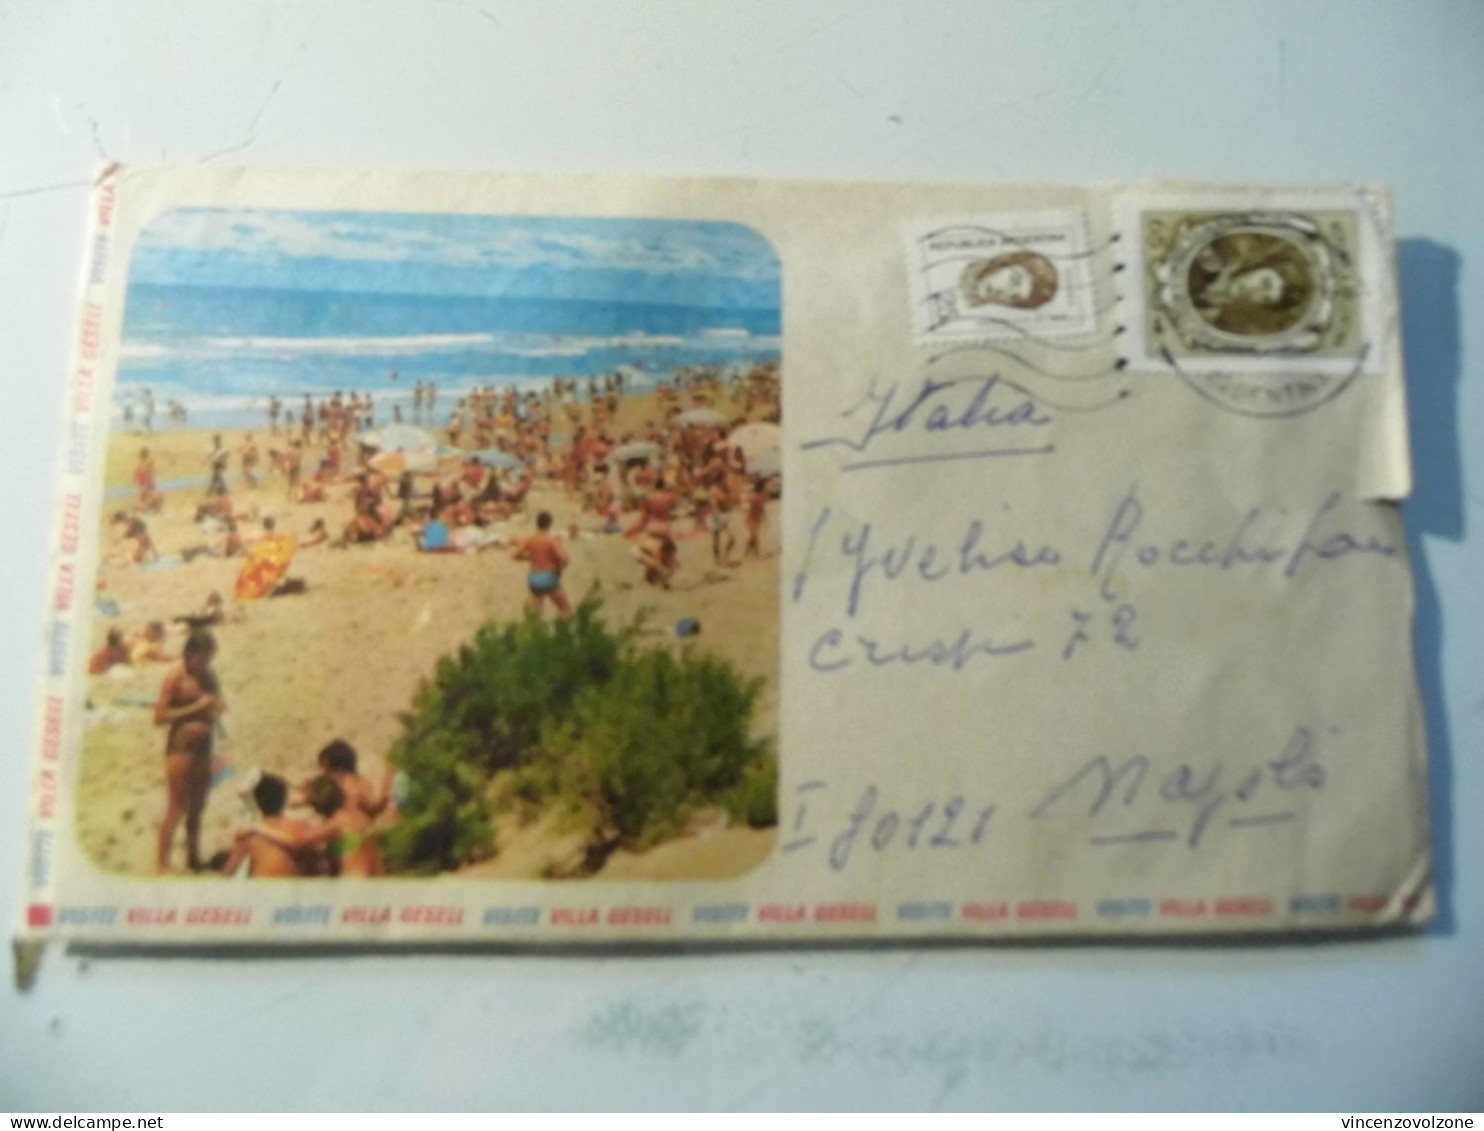 Busta Viaggiata Con Cartolina Per L'italia "VISITE VILLA GERSEL" 1972 - Storia Postale